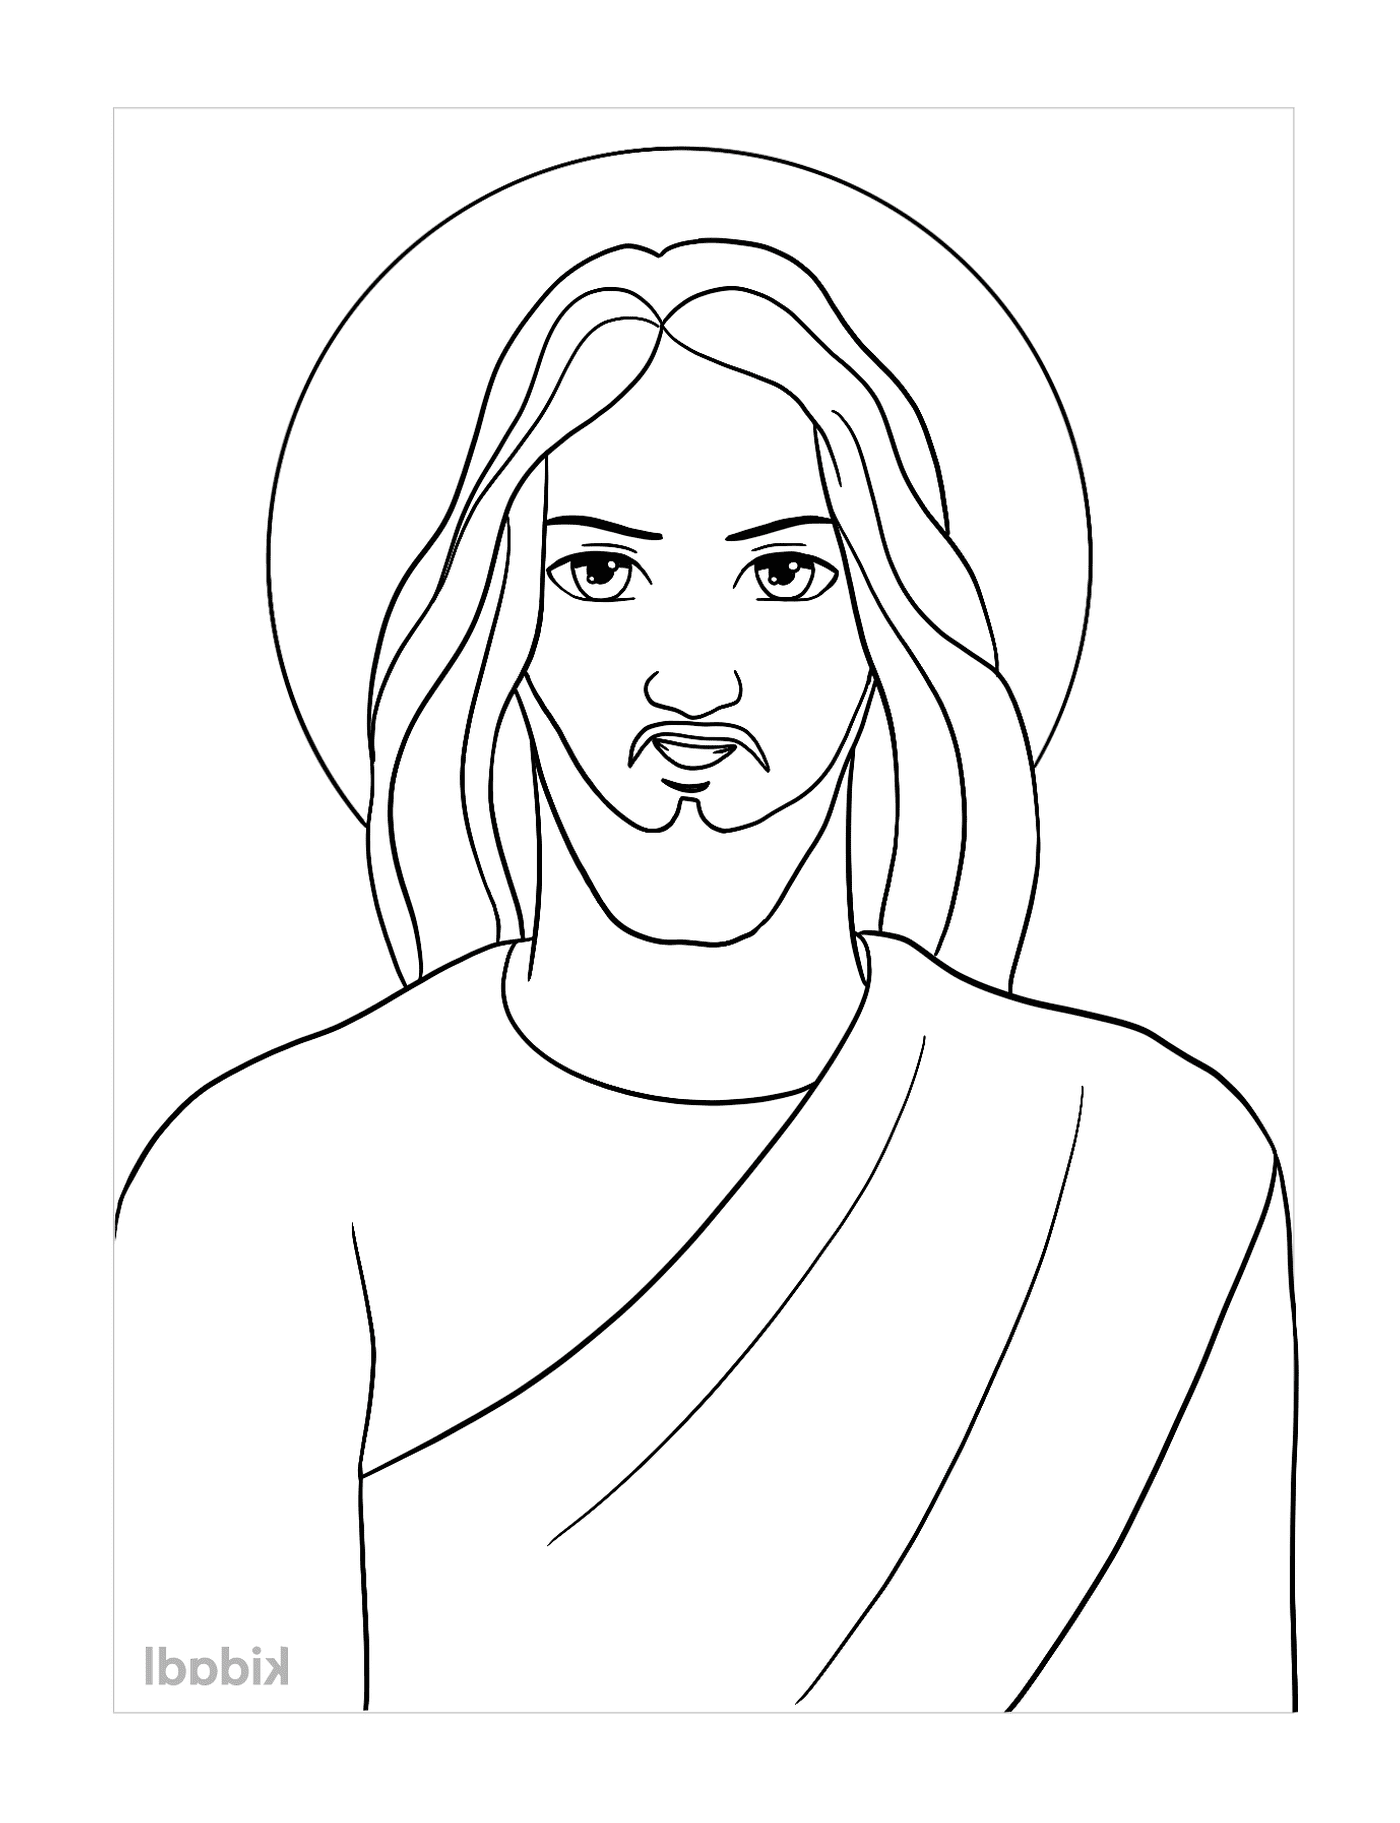  漫画中的耶稣,一个留胡子的男人 